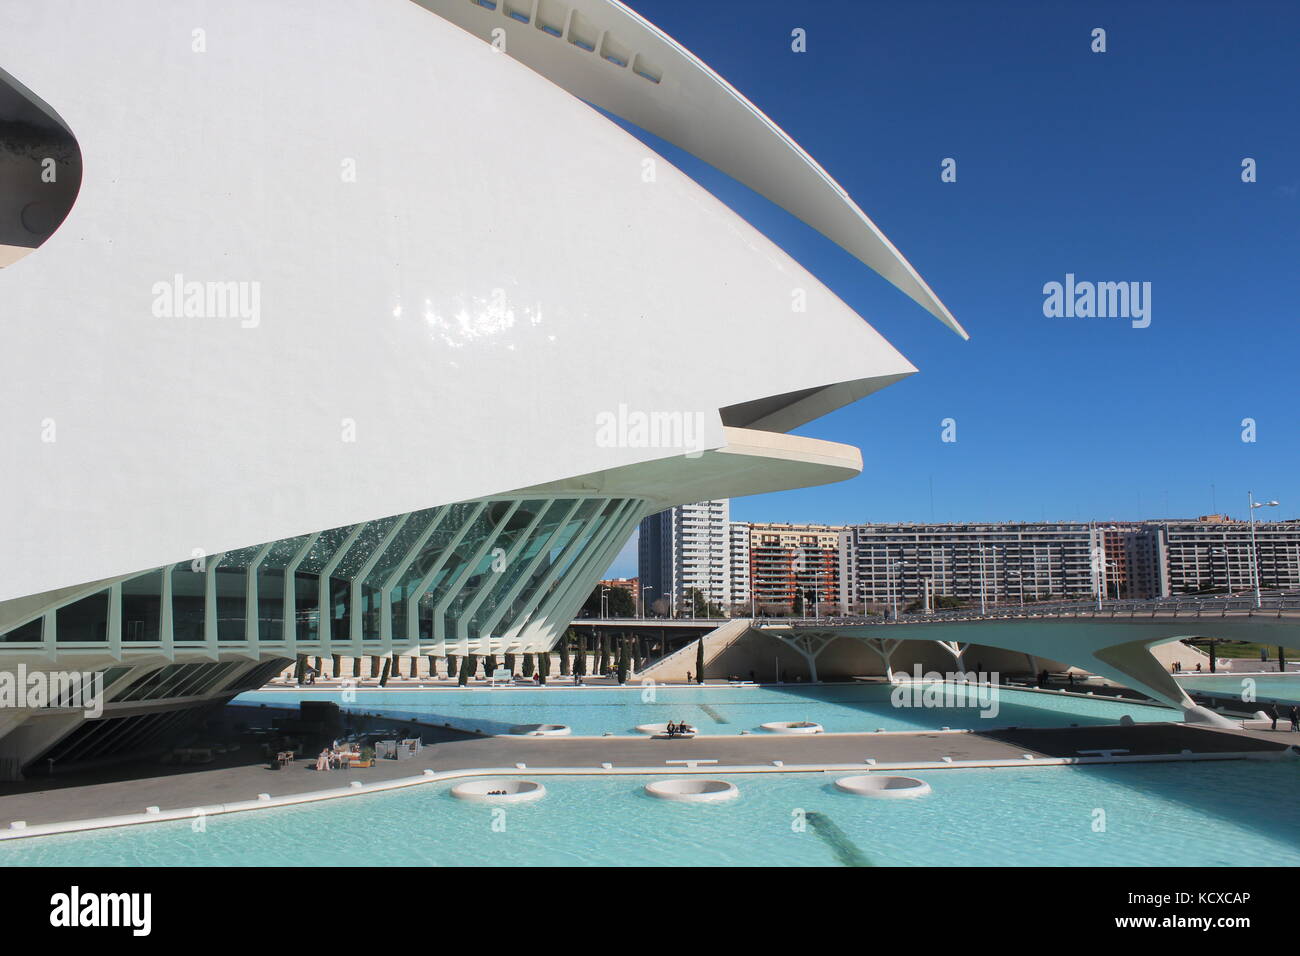 Ciudad de las Artes y las Ciencias. Der Science Park in Valencia, entworfen von Calatrava. Stockfoto